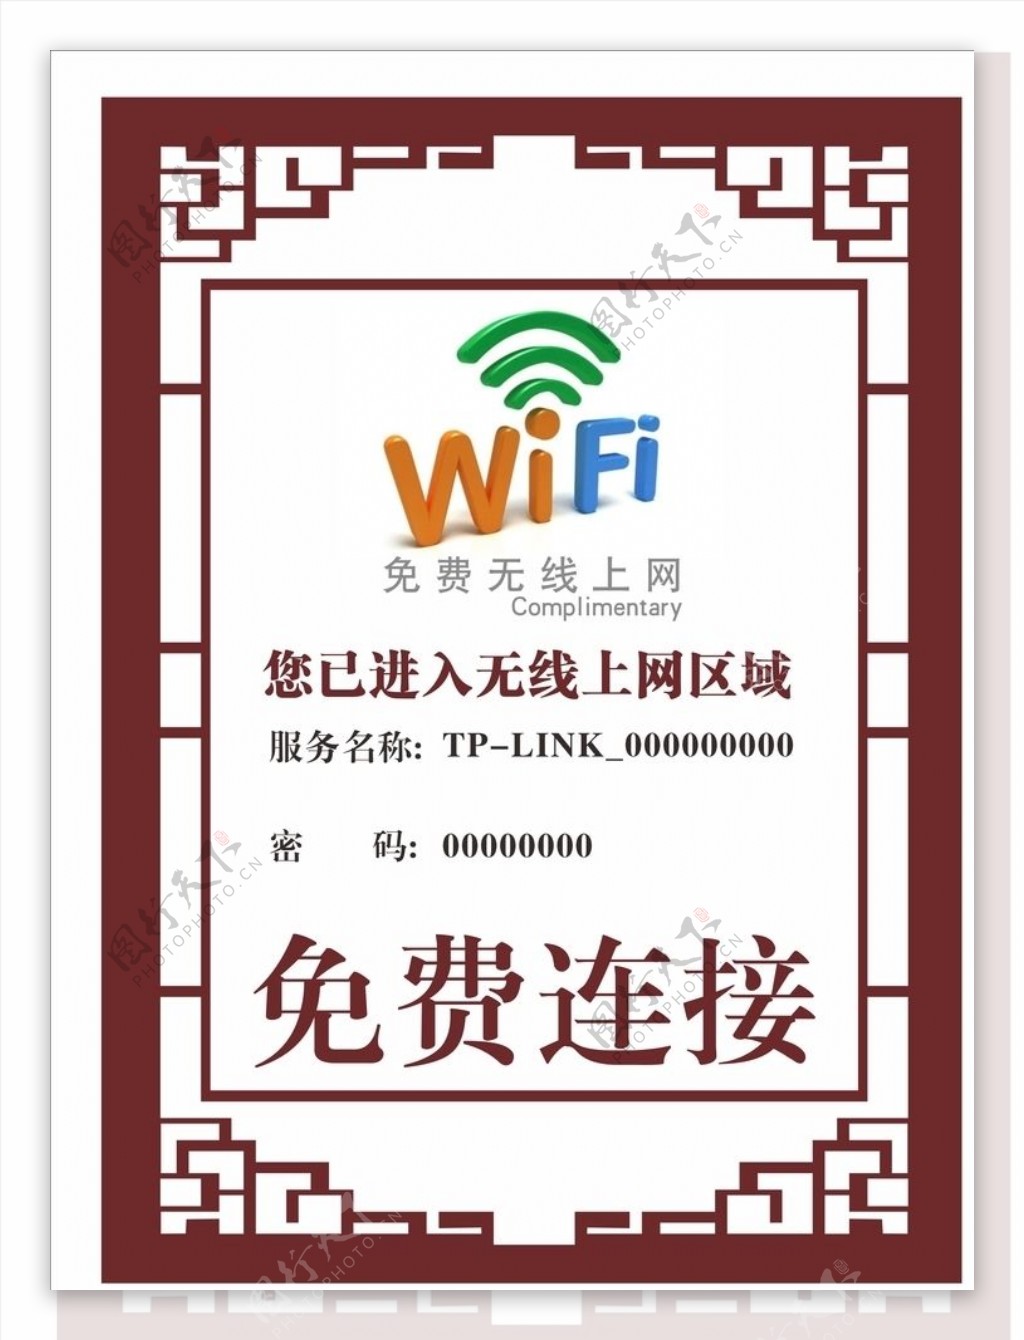 WiFi无线连接无线网络